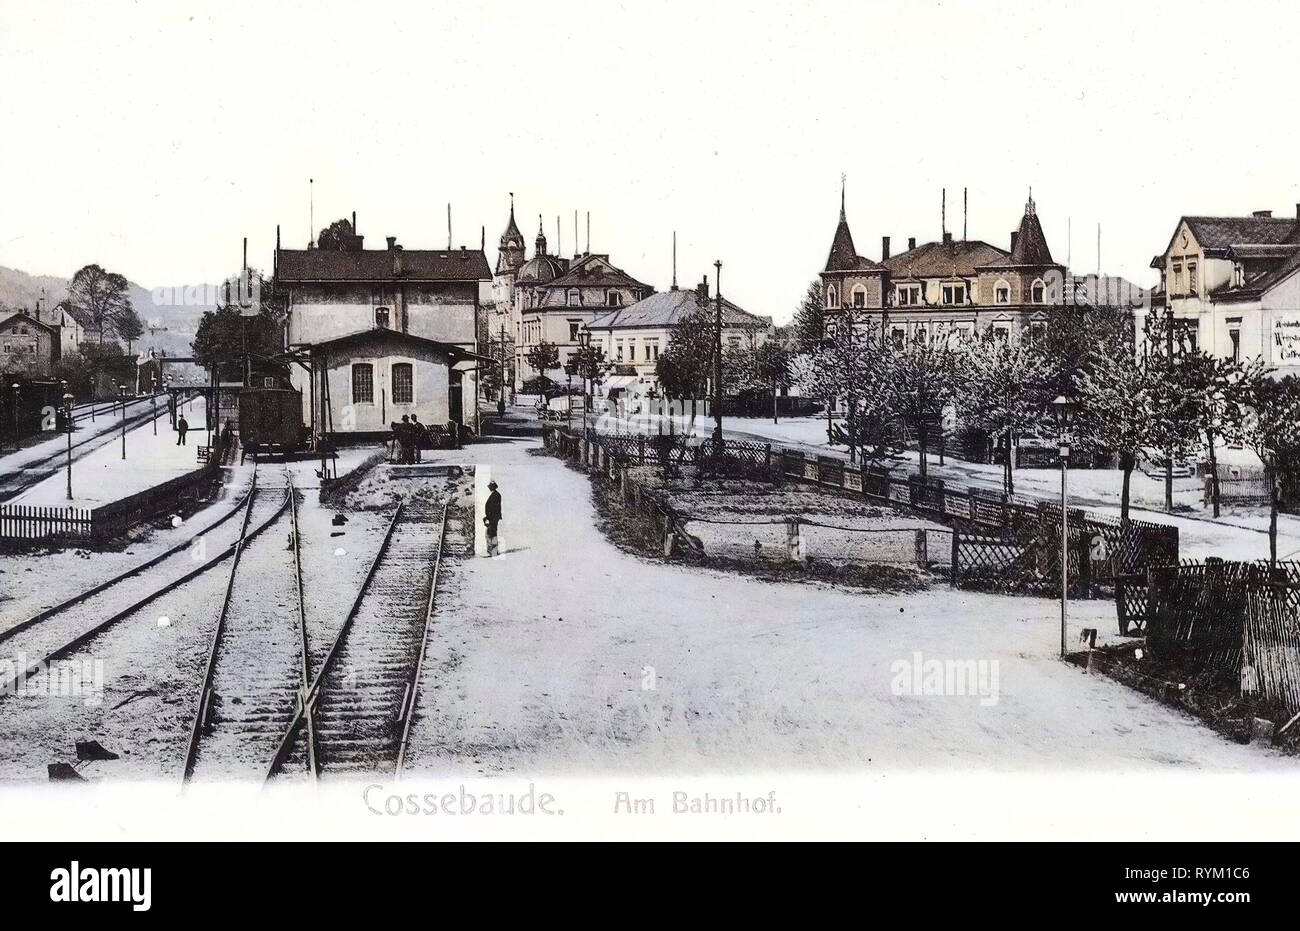 Bahnhof Cossebaude, 1906, Dresden, Cossebaude, Bahnhof, Germany Stock Photo